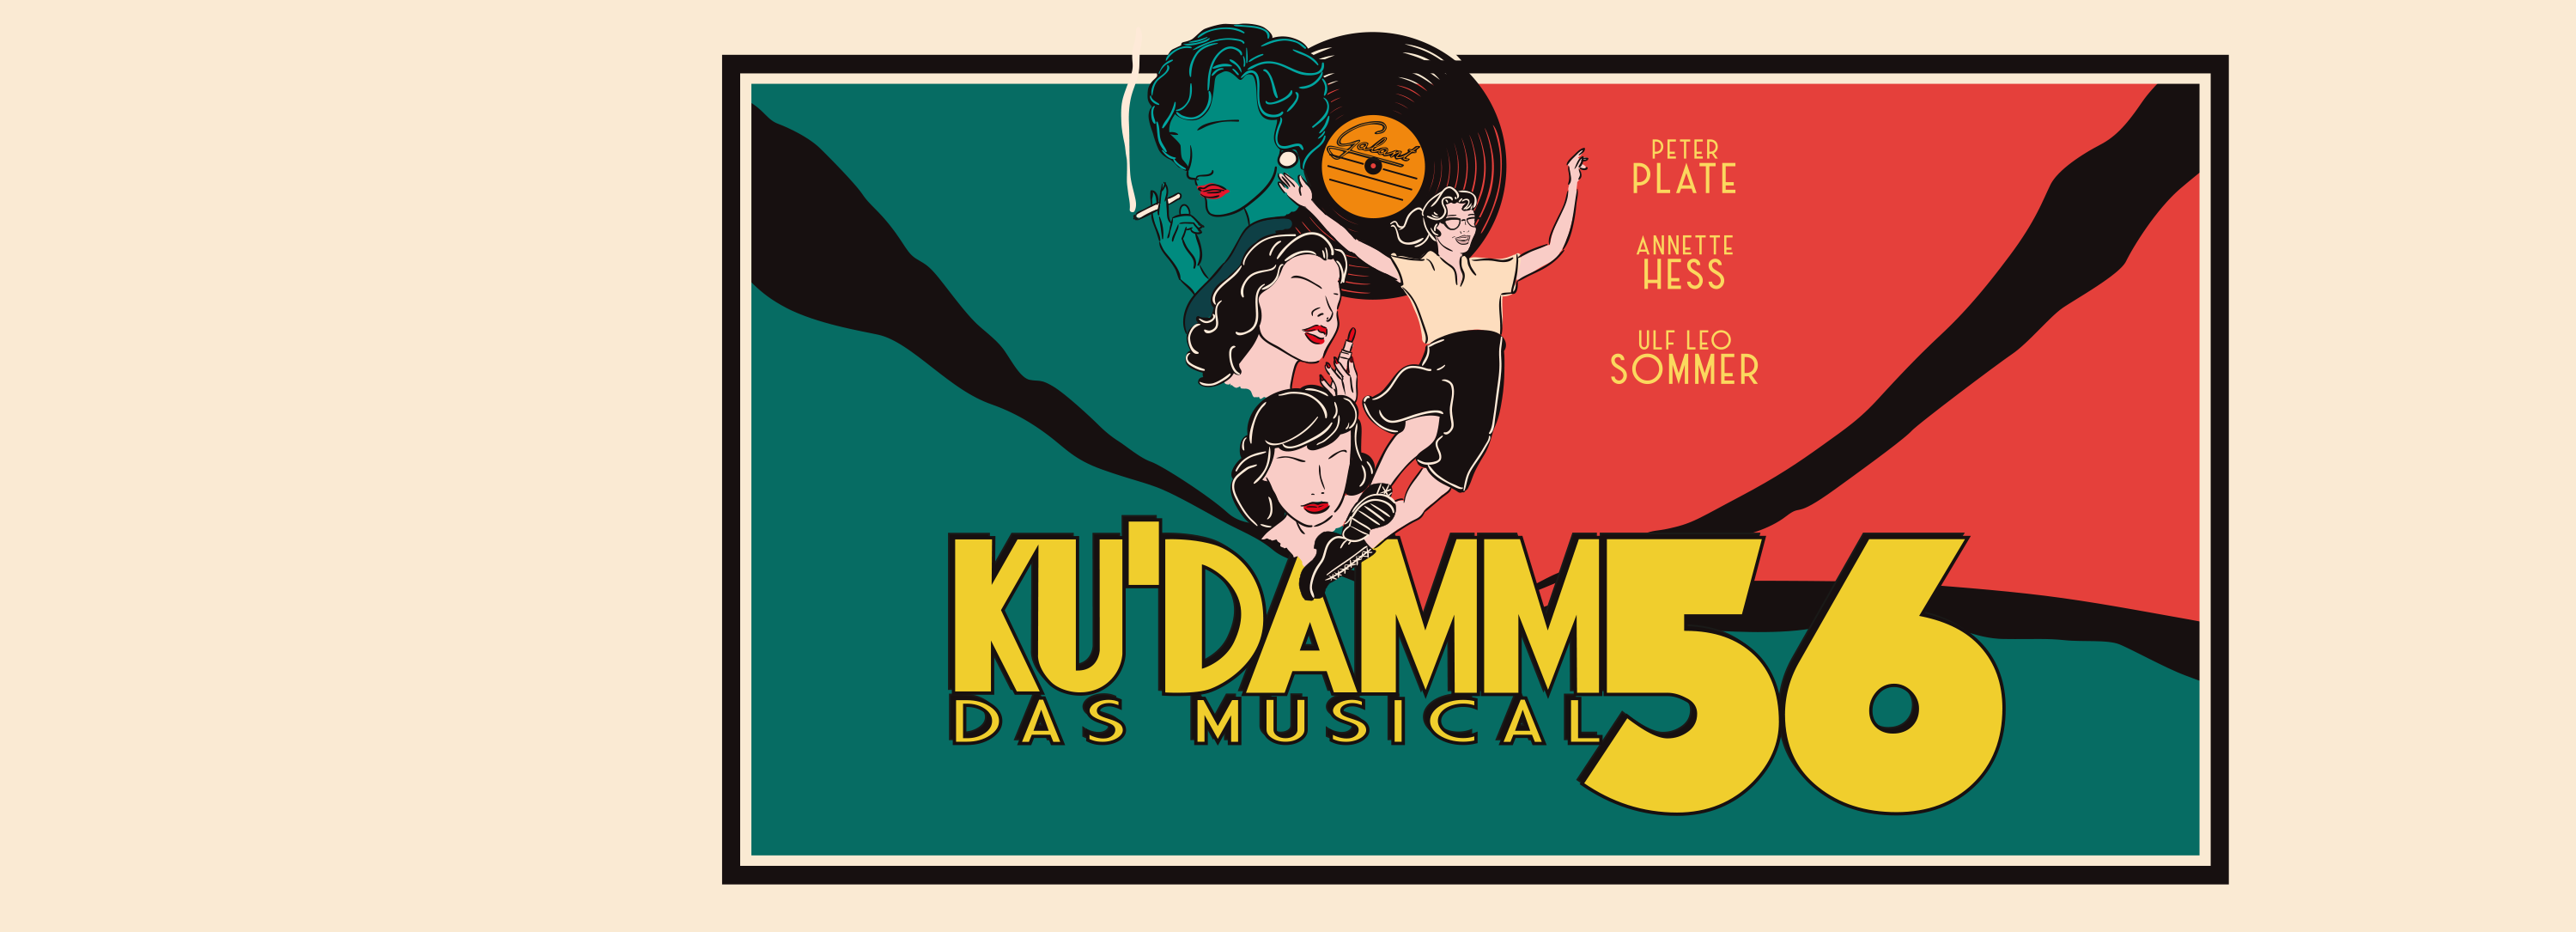 Ku'damm 56 – Das Musical